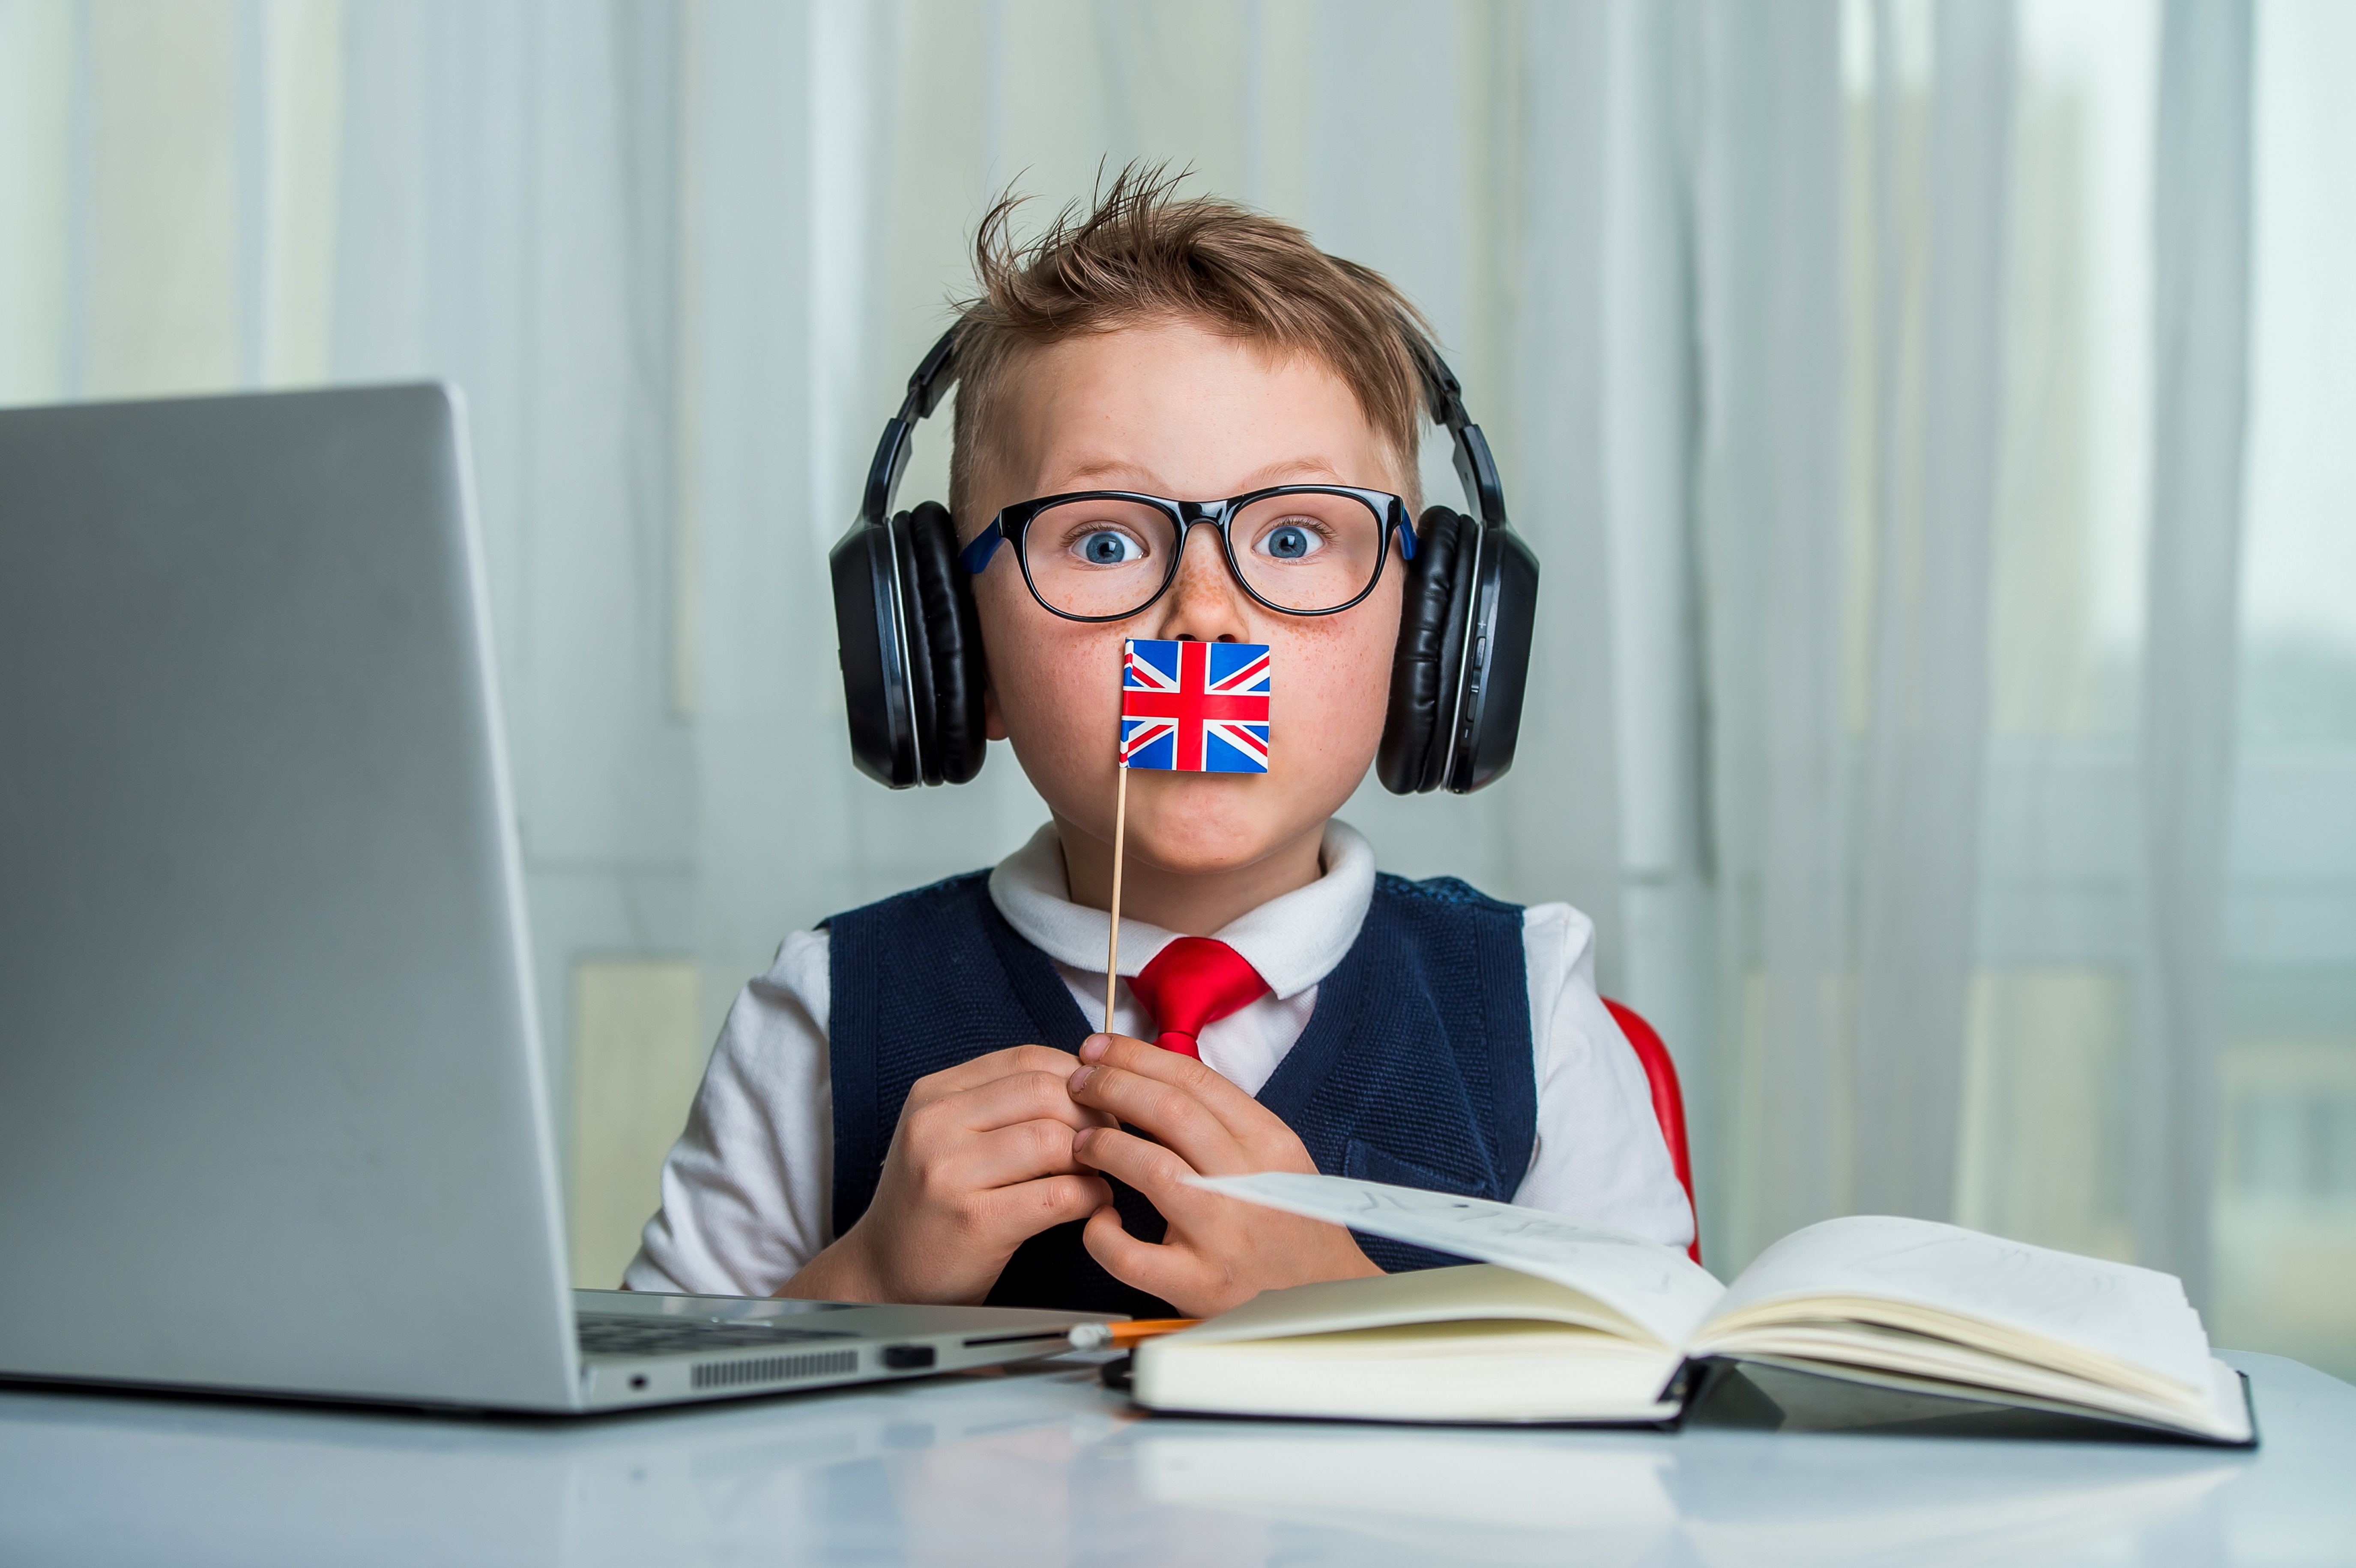 Hány éves kortól érdemes angolt tanulni a gyerekeknek? - Blikk